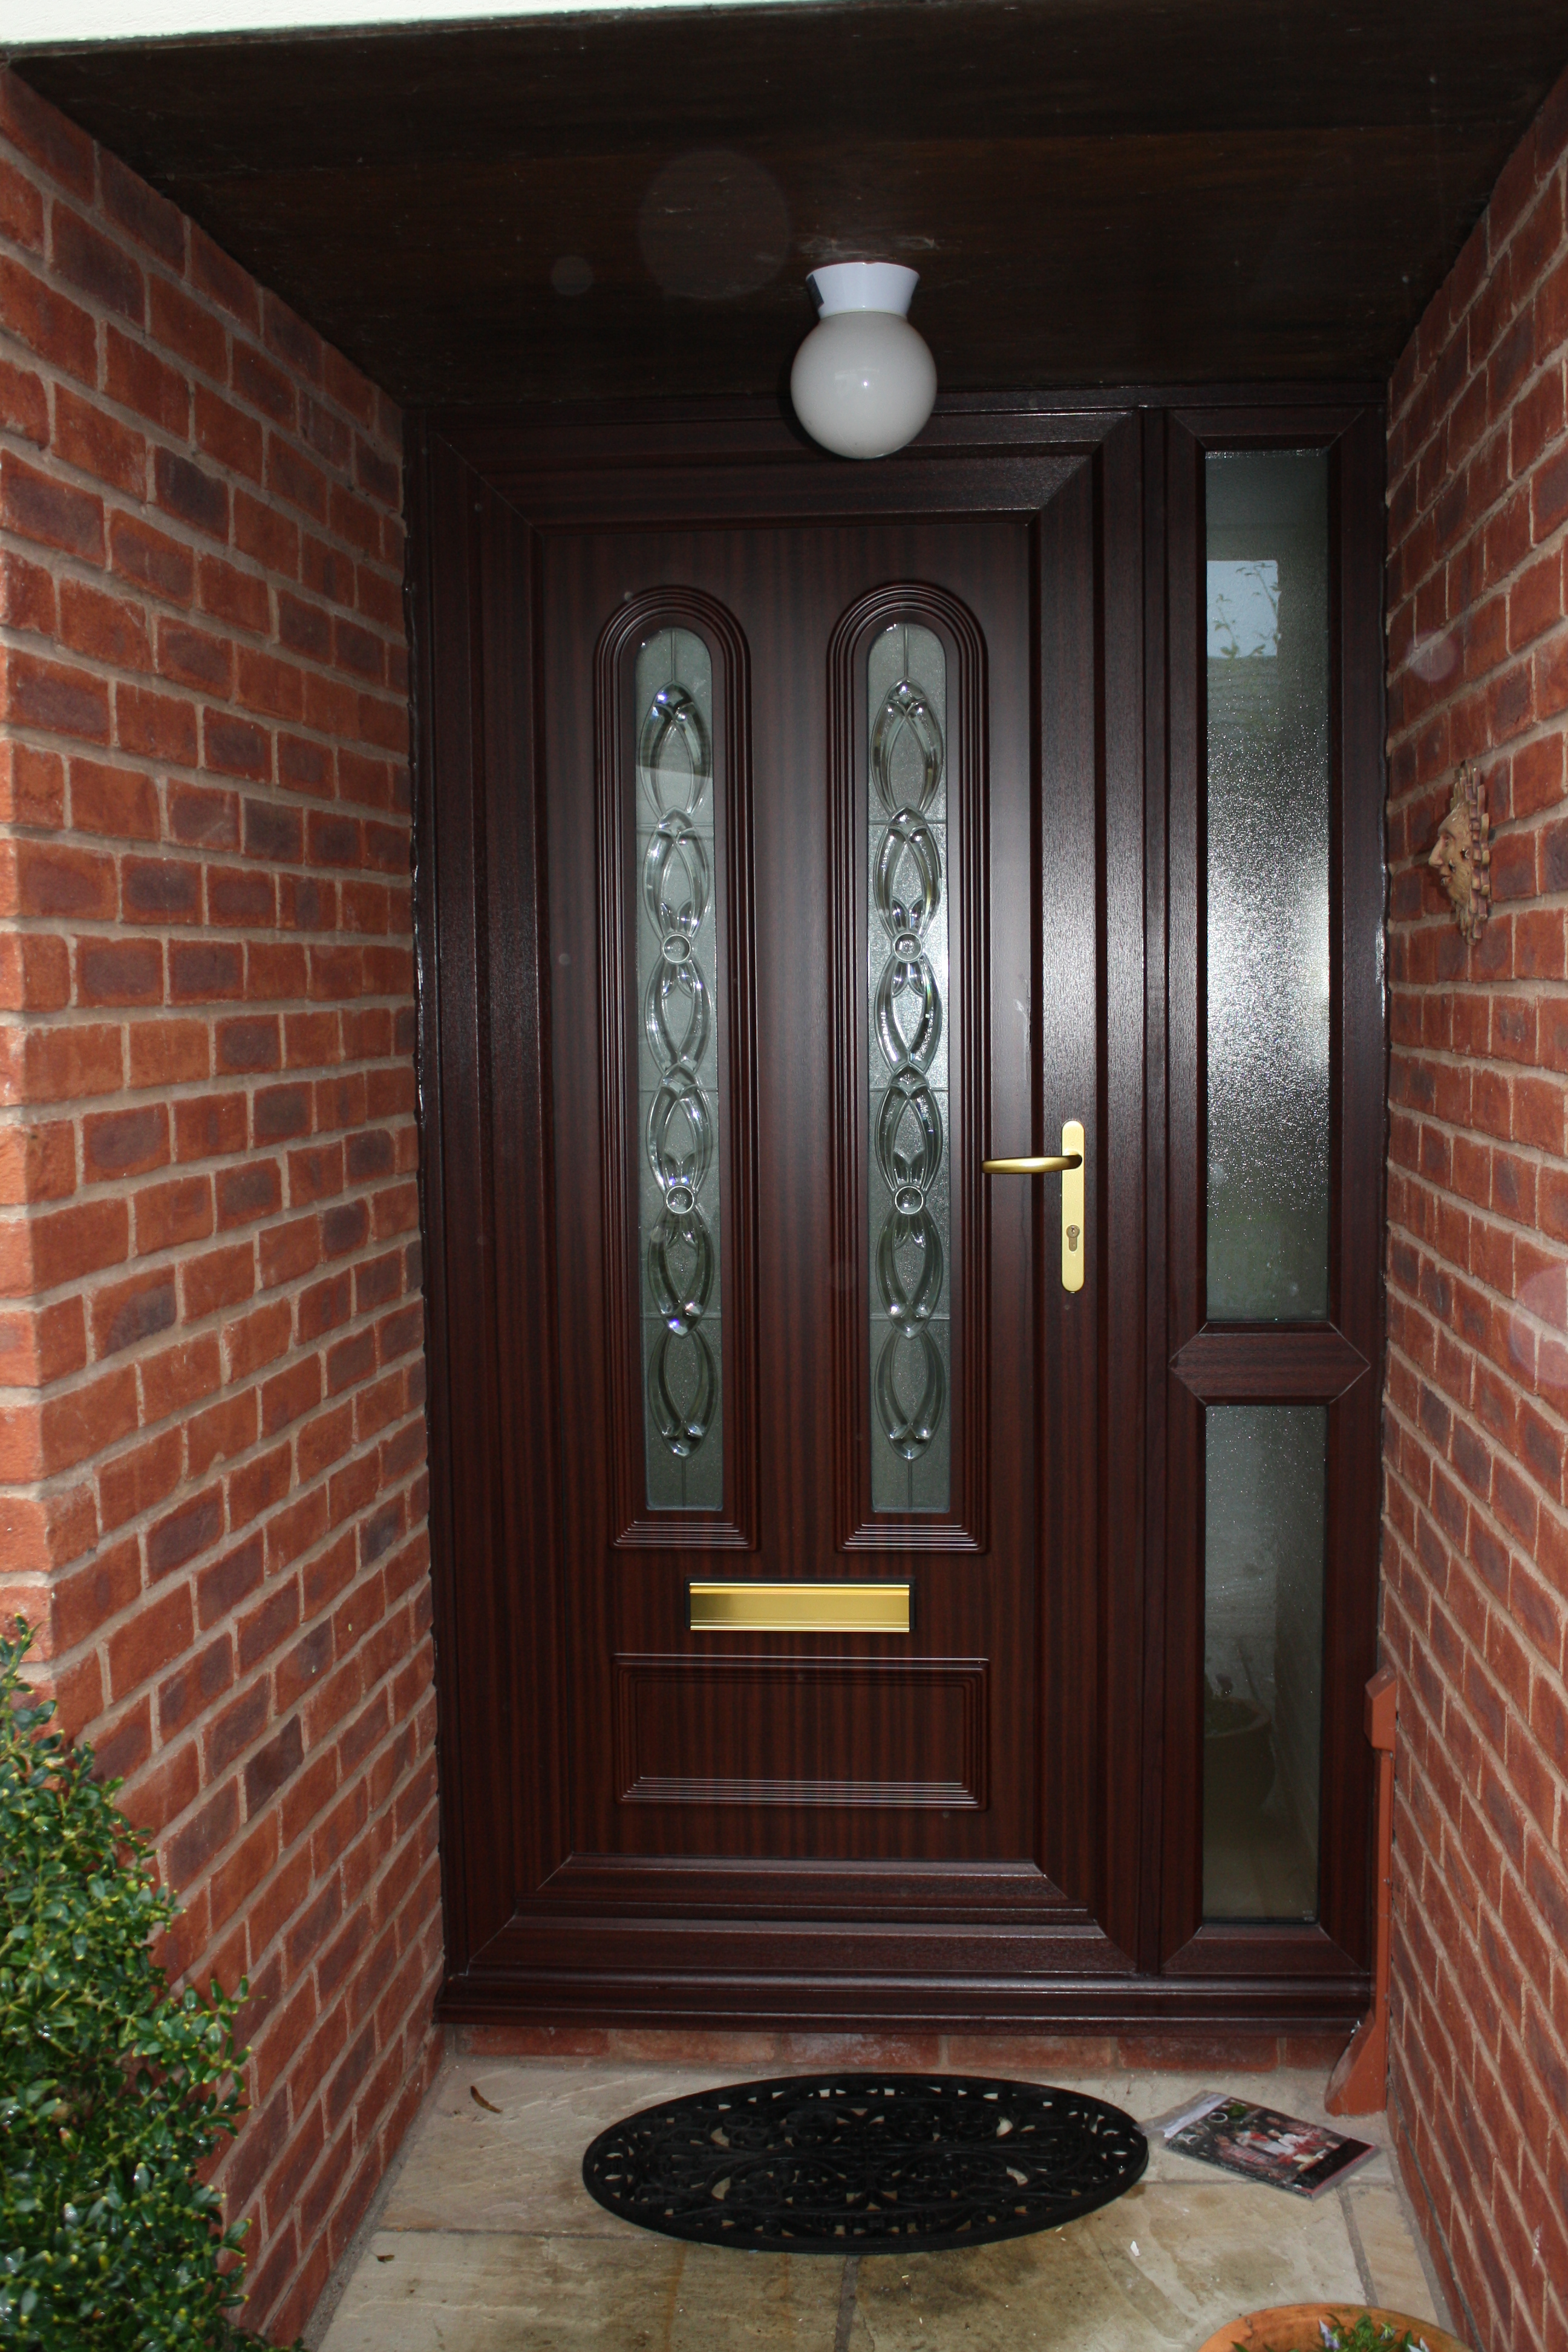 Edwardian Classic Door available as a Flood Door or Security Door in White, Wood Grain or a range of Door Colour Options.